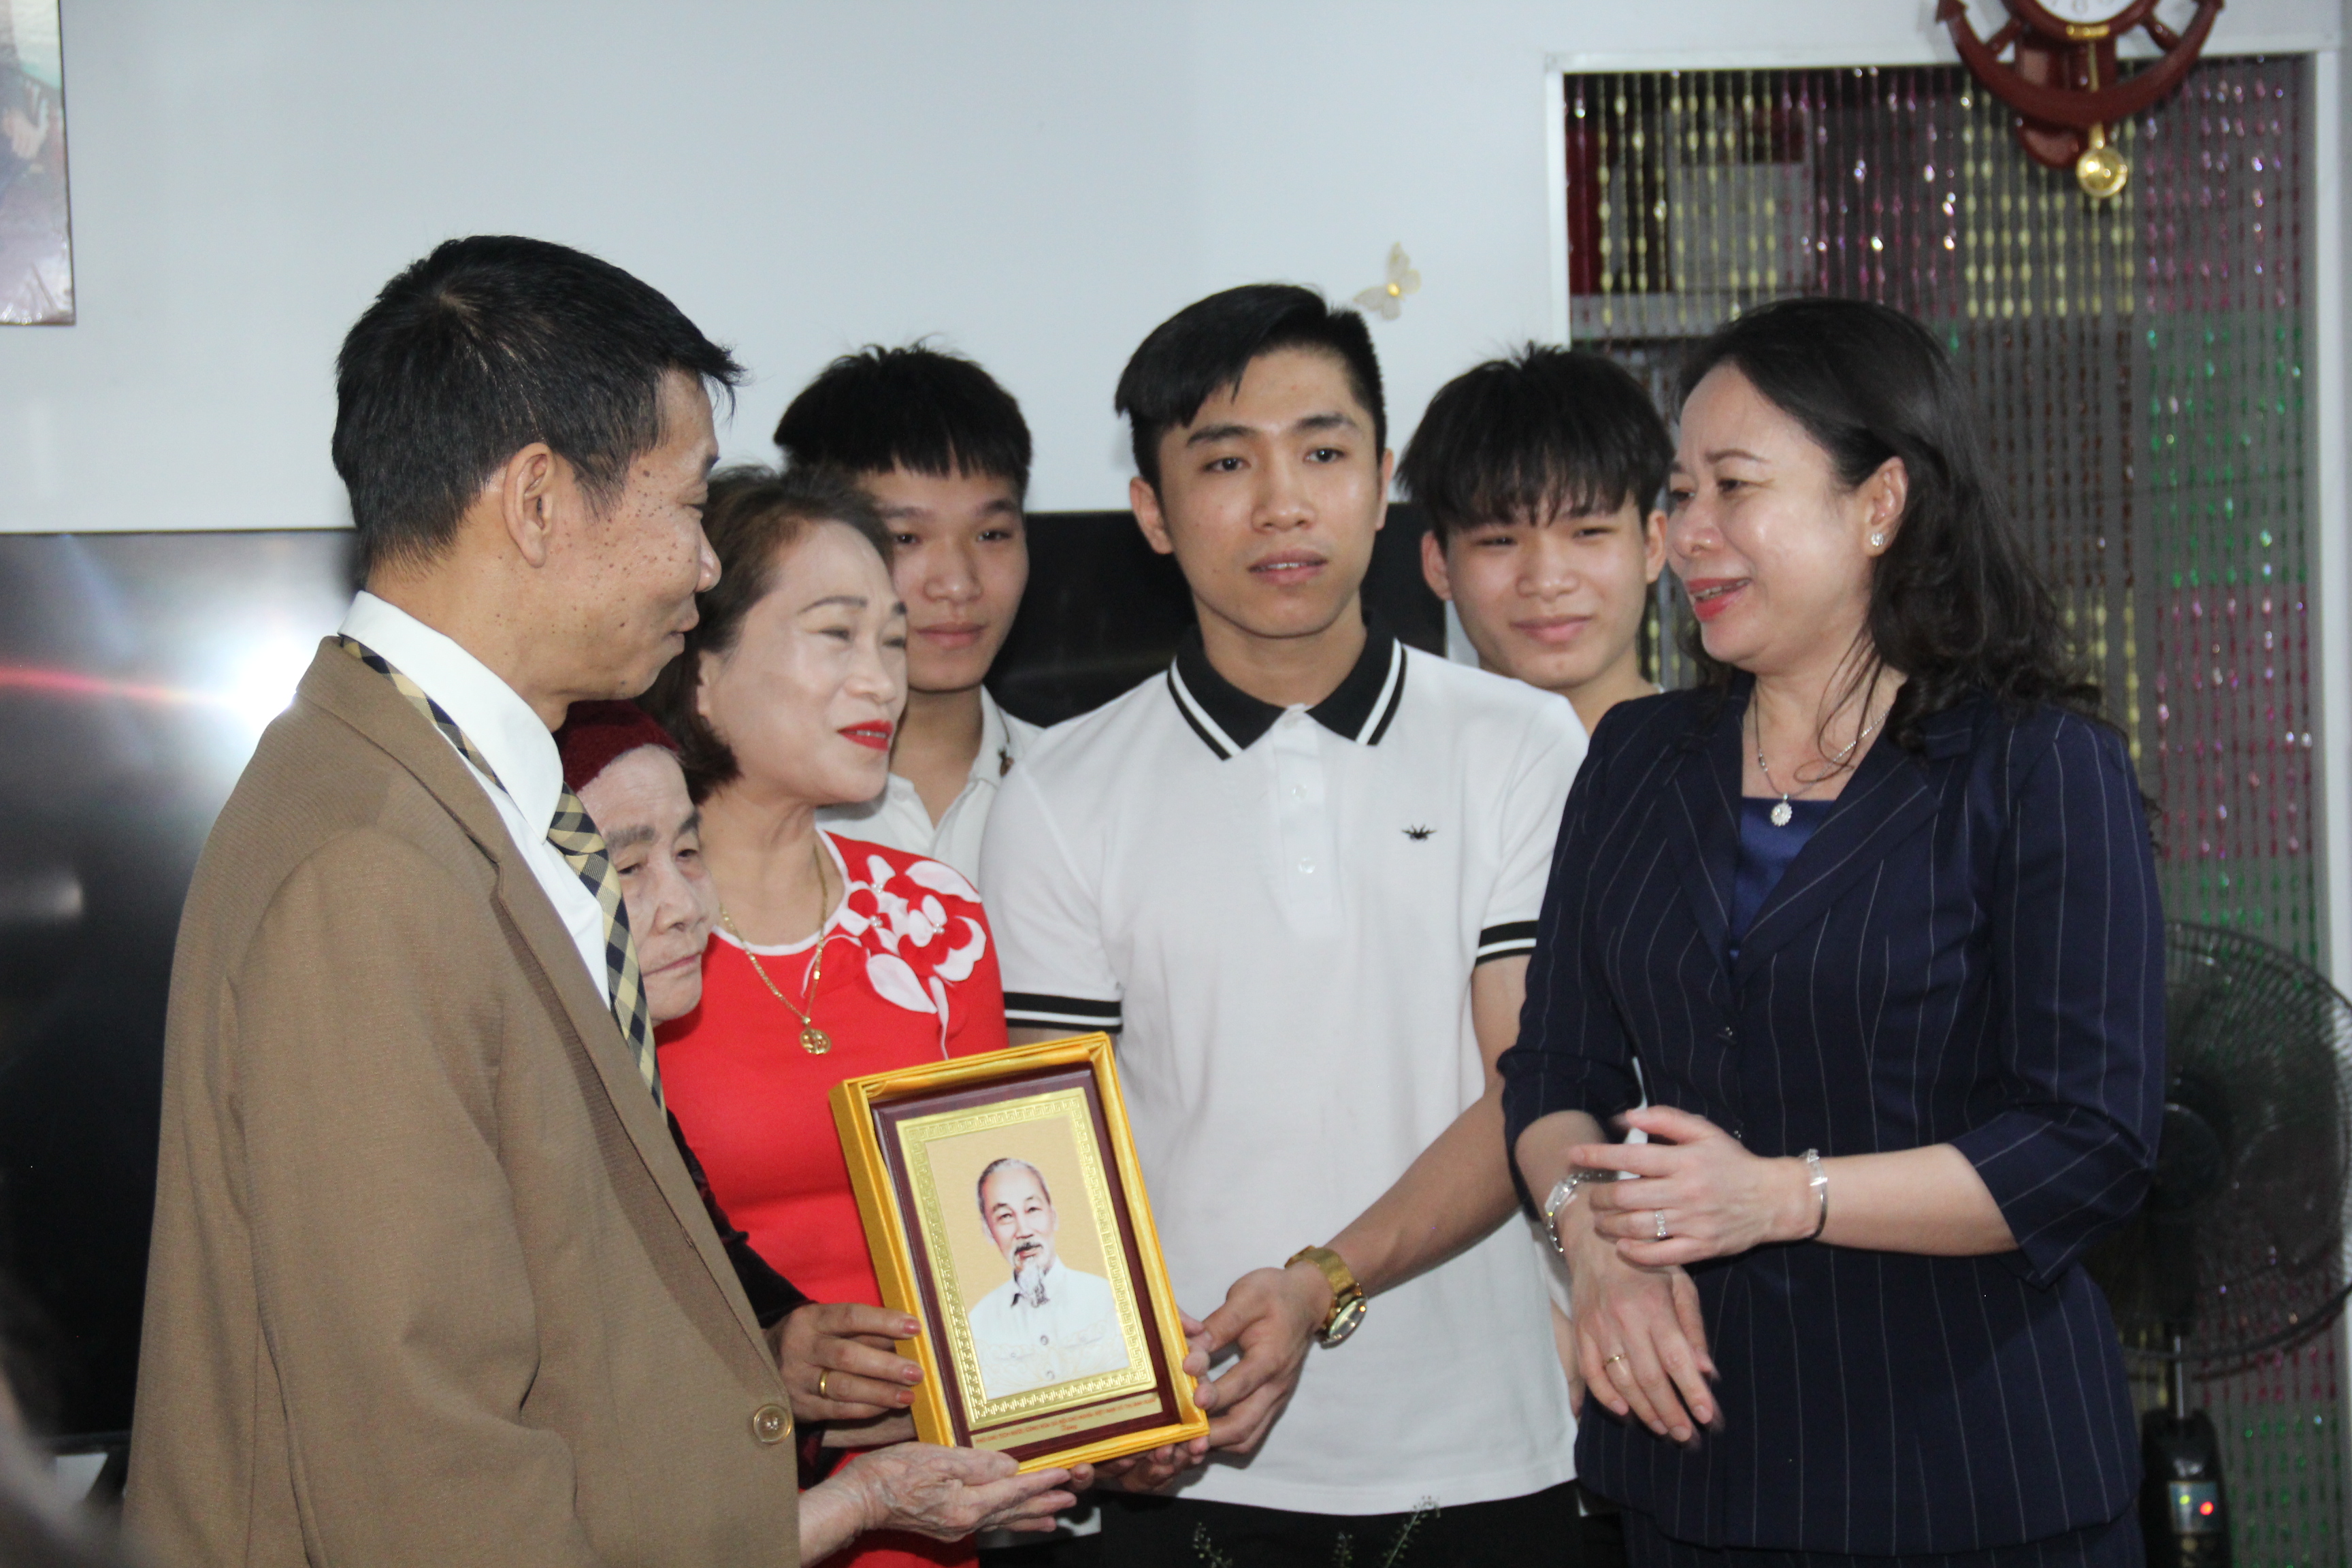 Đội ngũ công nhân lao động ngành Than có vai trò và đóng góp quan trọng đối với sự phát triển kinh tế - xã hội của tỉnh Quảng Ninh và đất nước - Ảnh 11